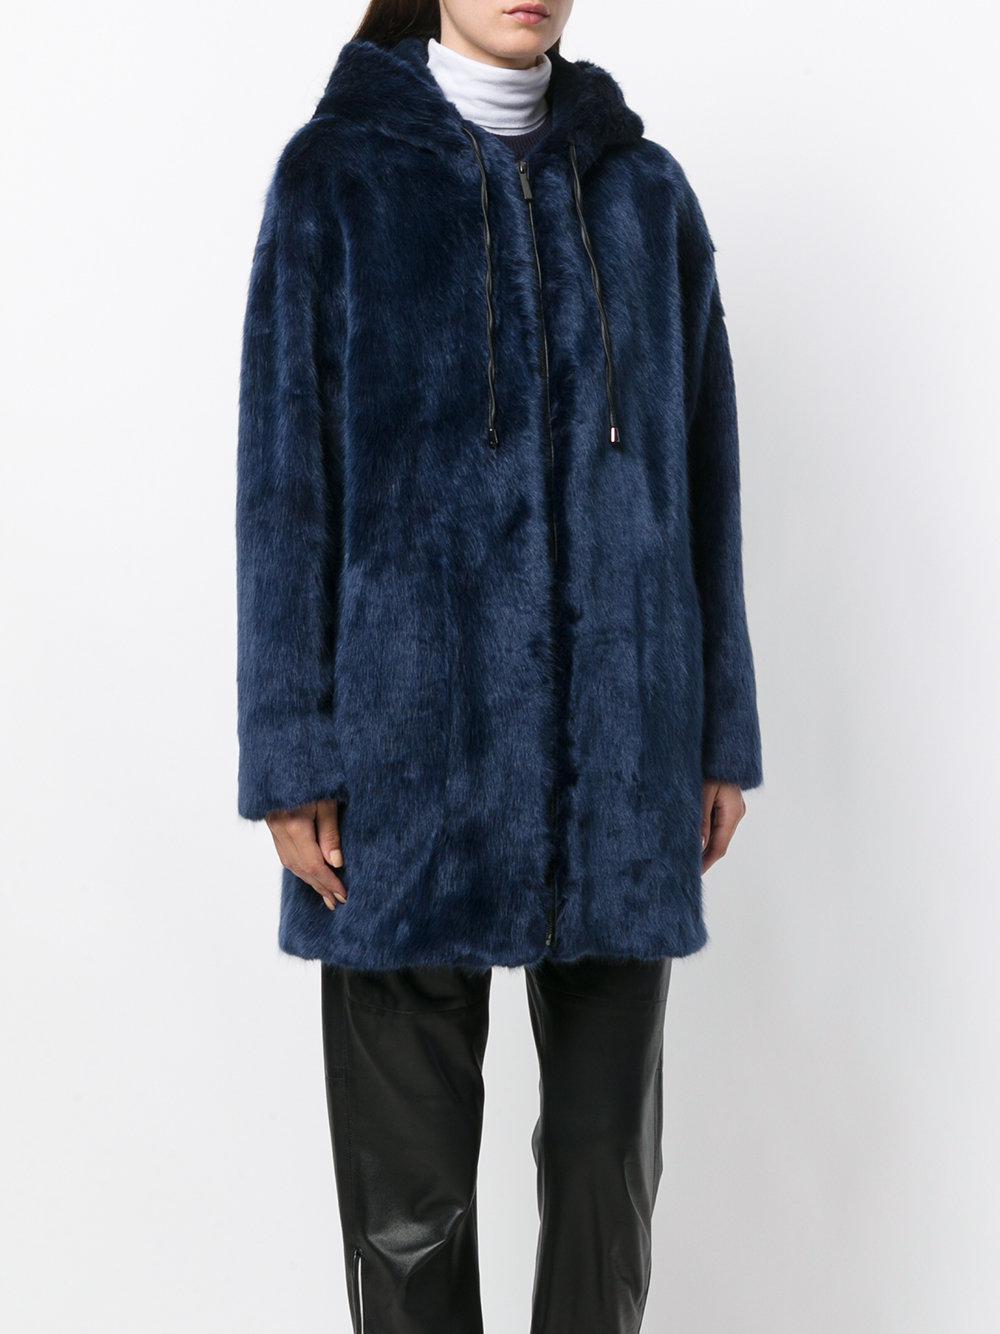 Essentiel Antwerp Omona Faux Fur Jacket in Blue - Lyst